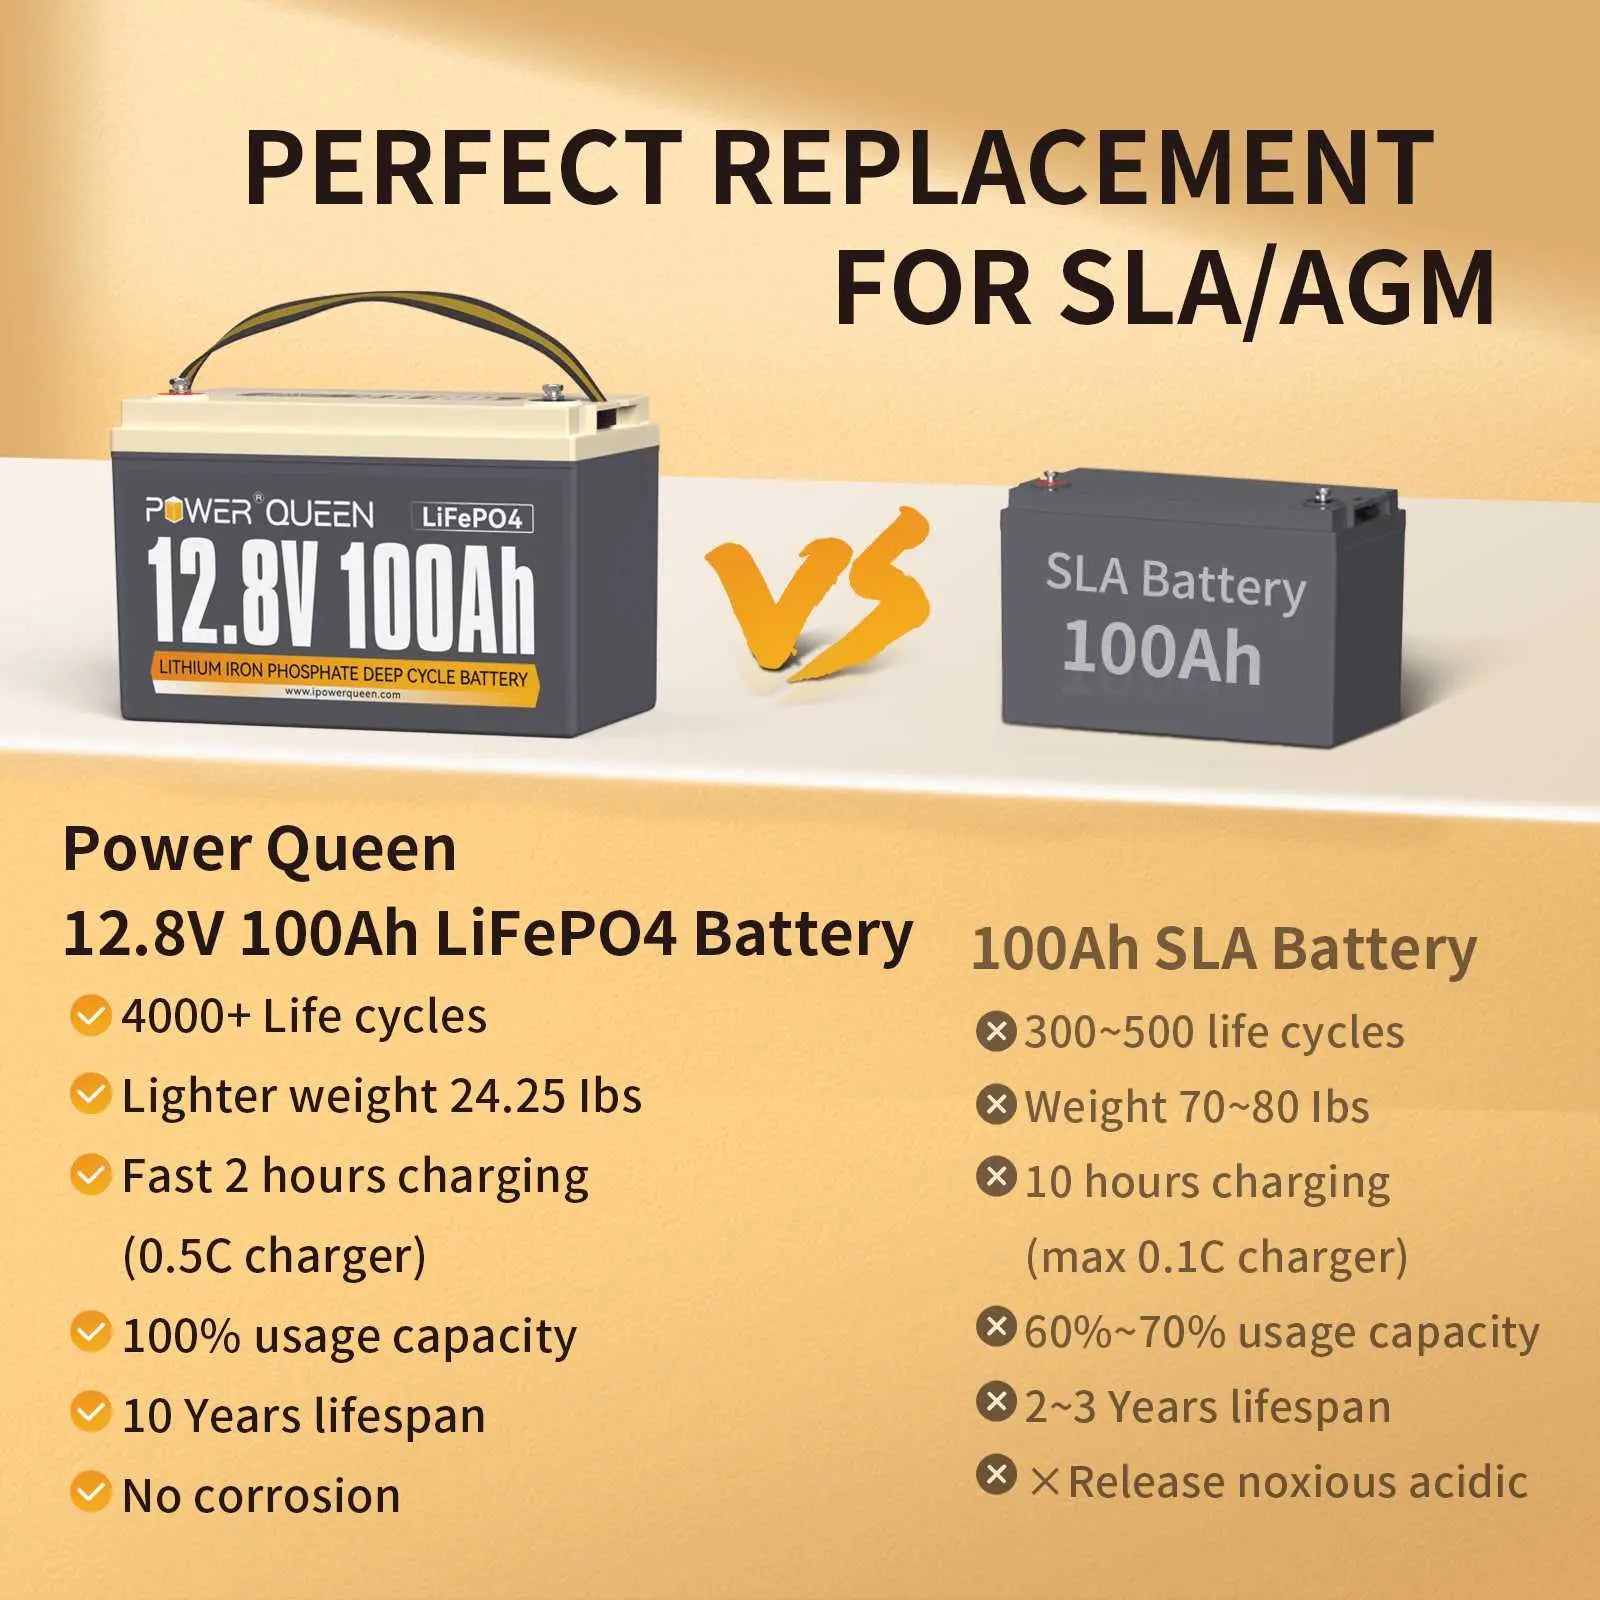 Power Queen 12.8V 100Ah LiFePO4 Battery, Built-in 100A BMS Power Queen